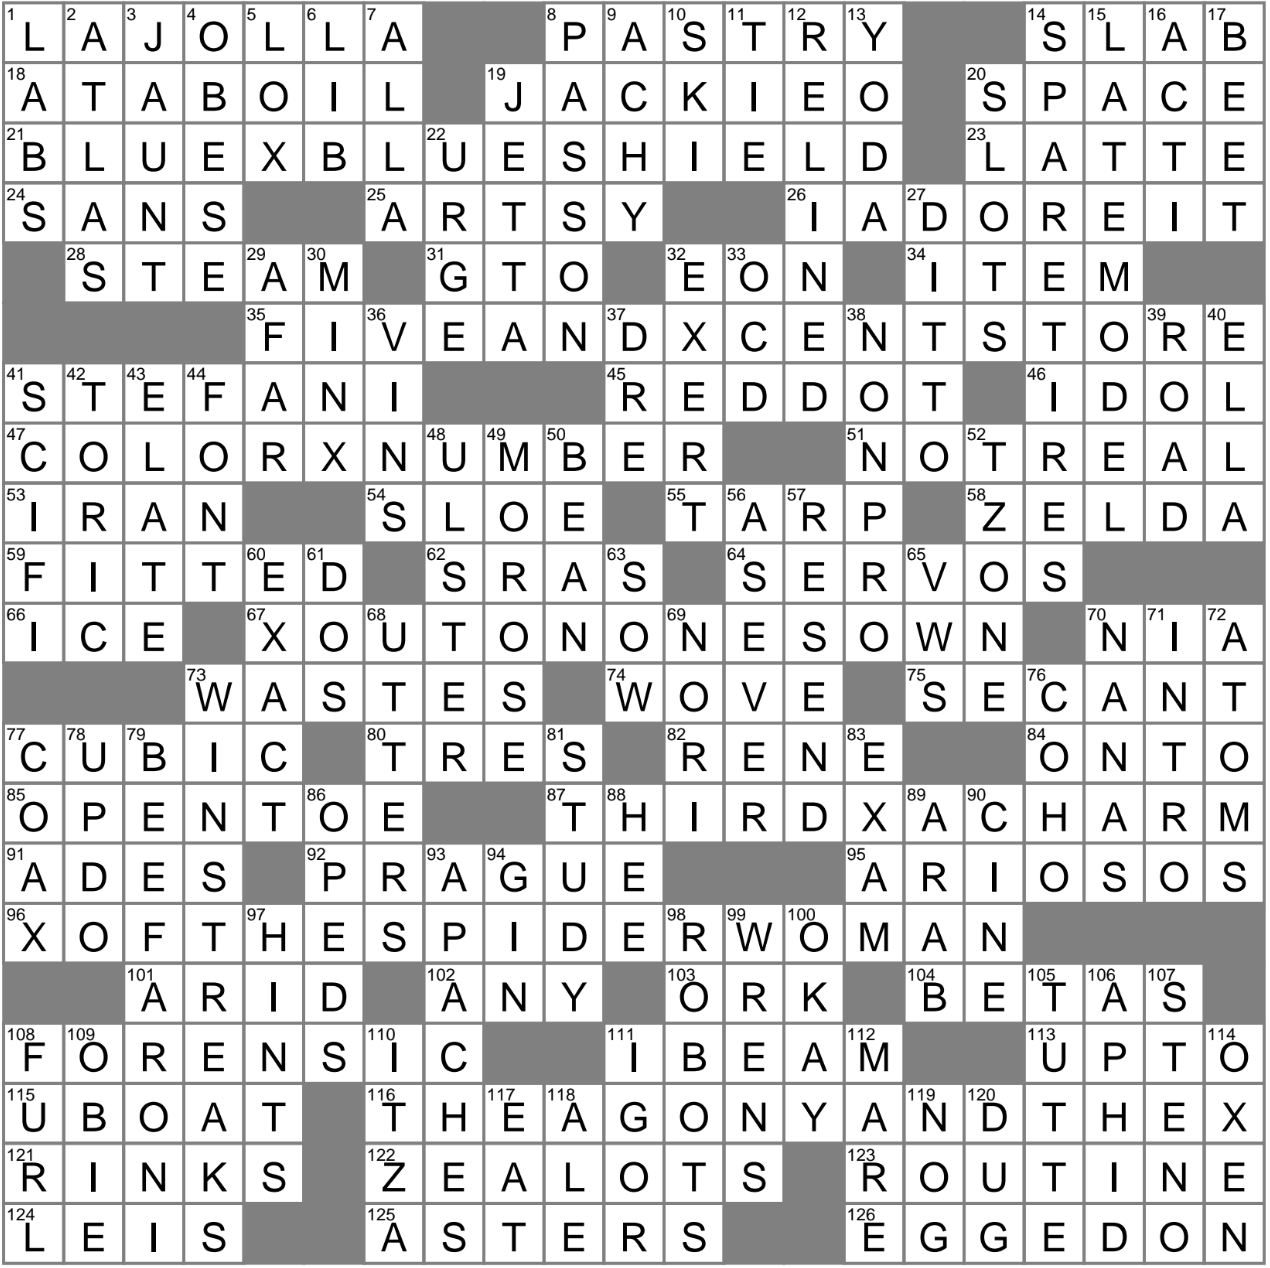 Culture crossword puzzle